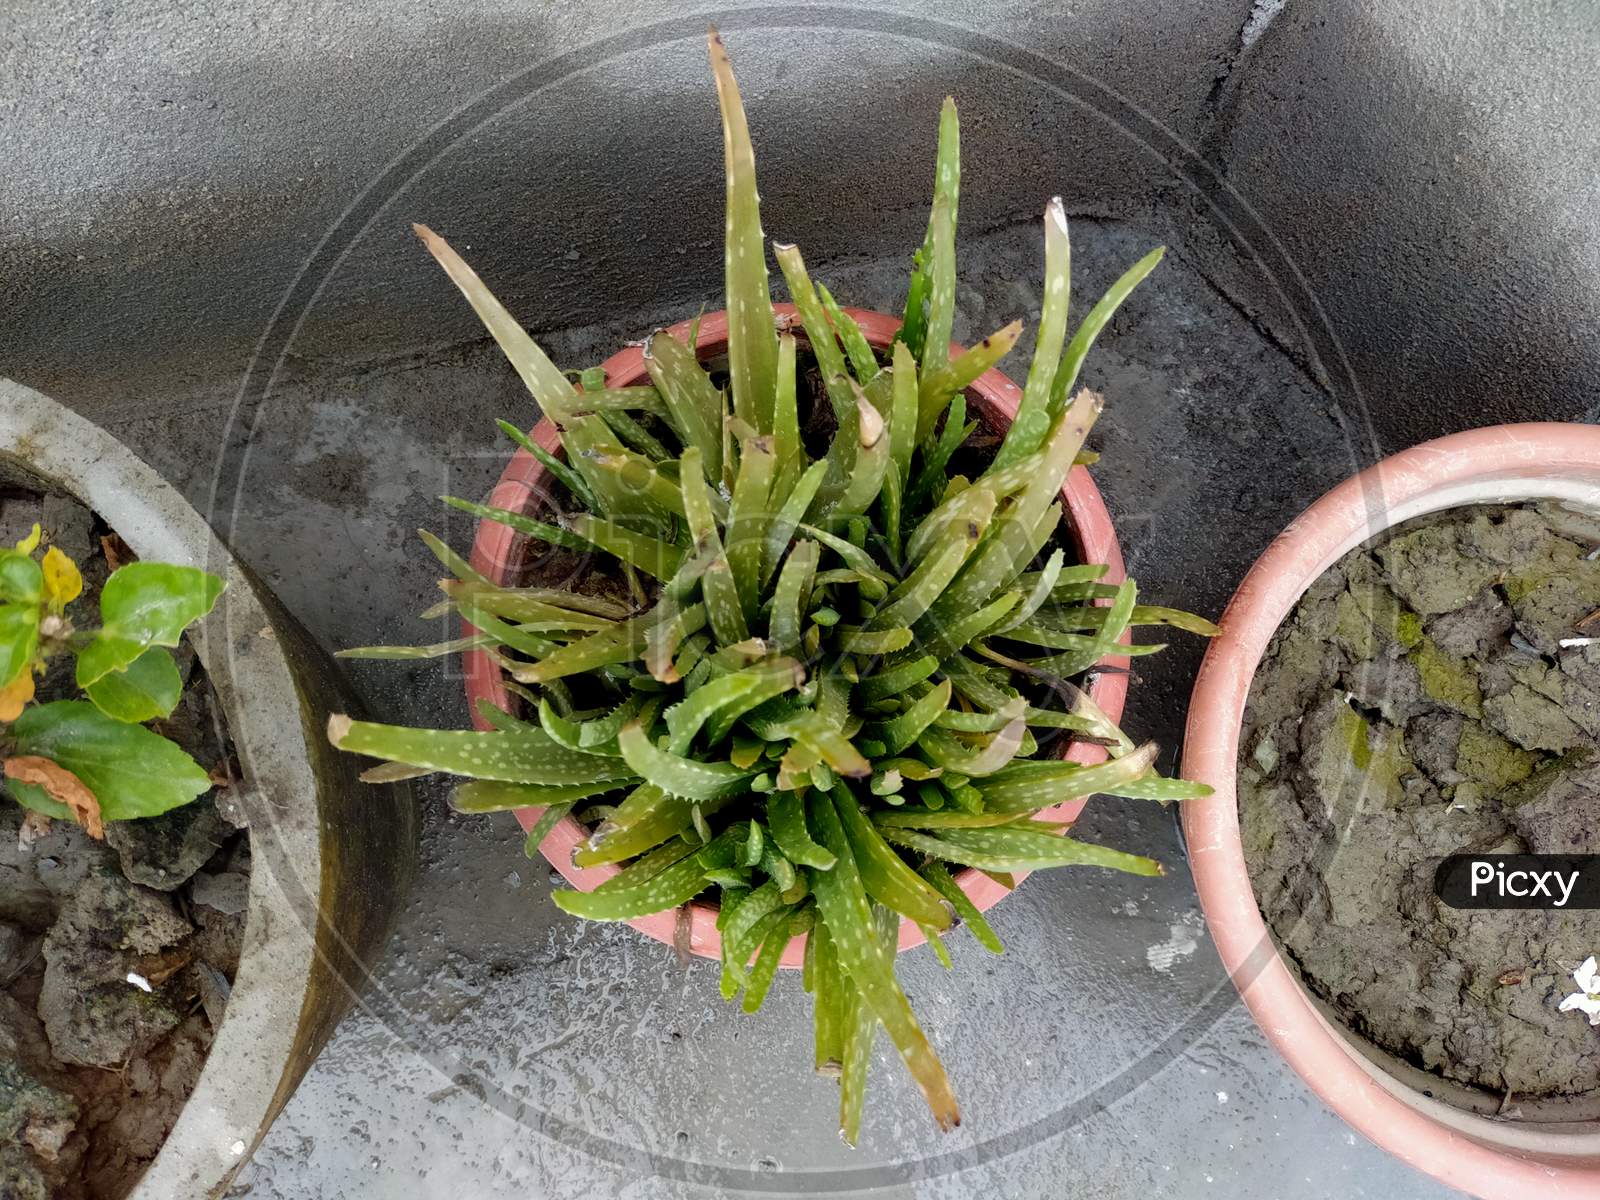 Aloe Vera plant planted in the pot